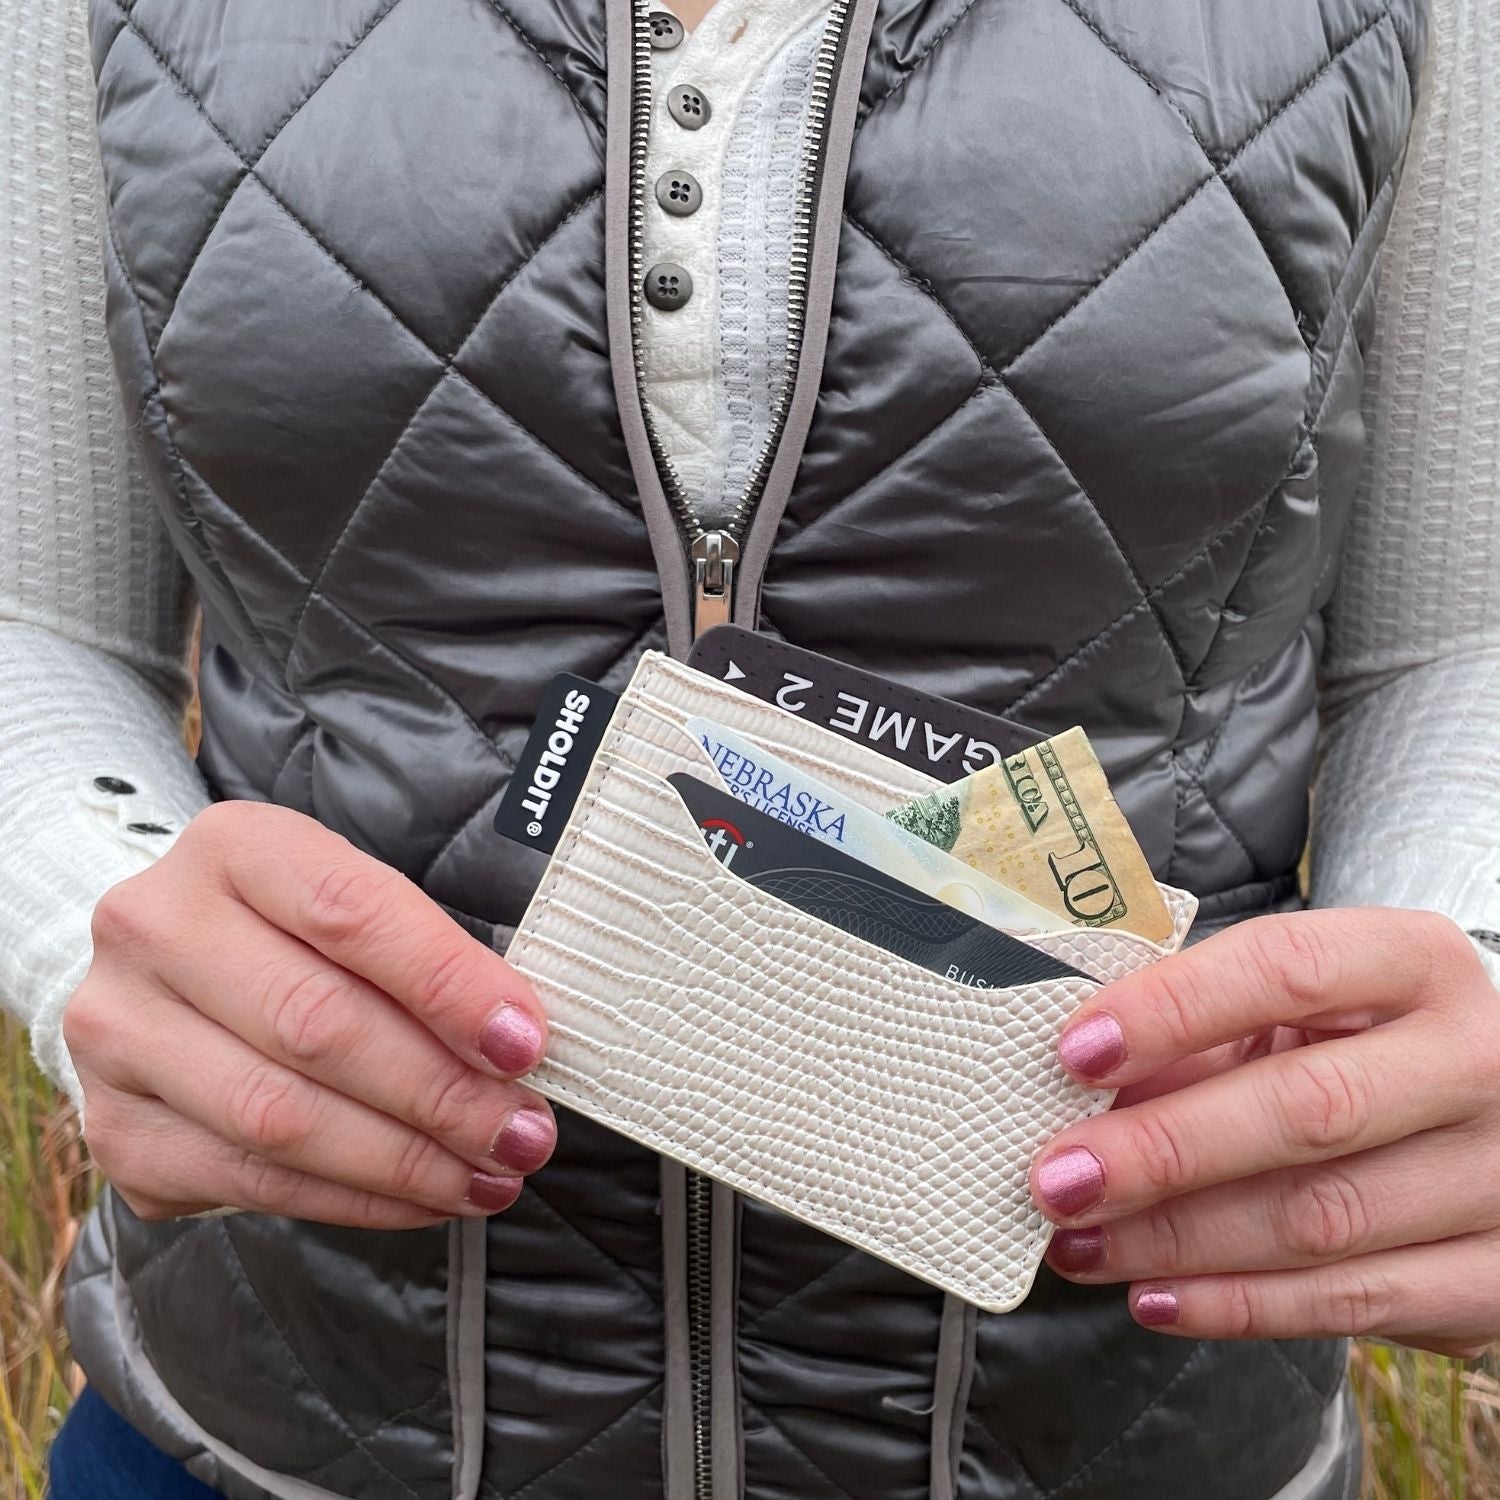 SHOLDIT card holder wallet shown in hands